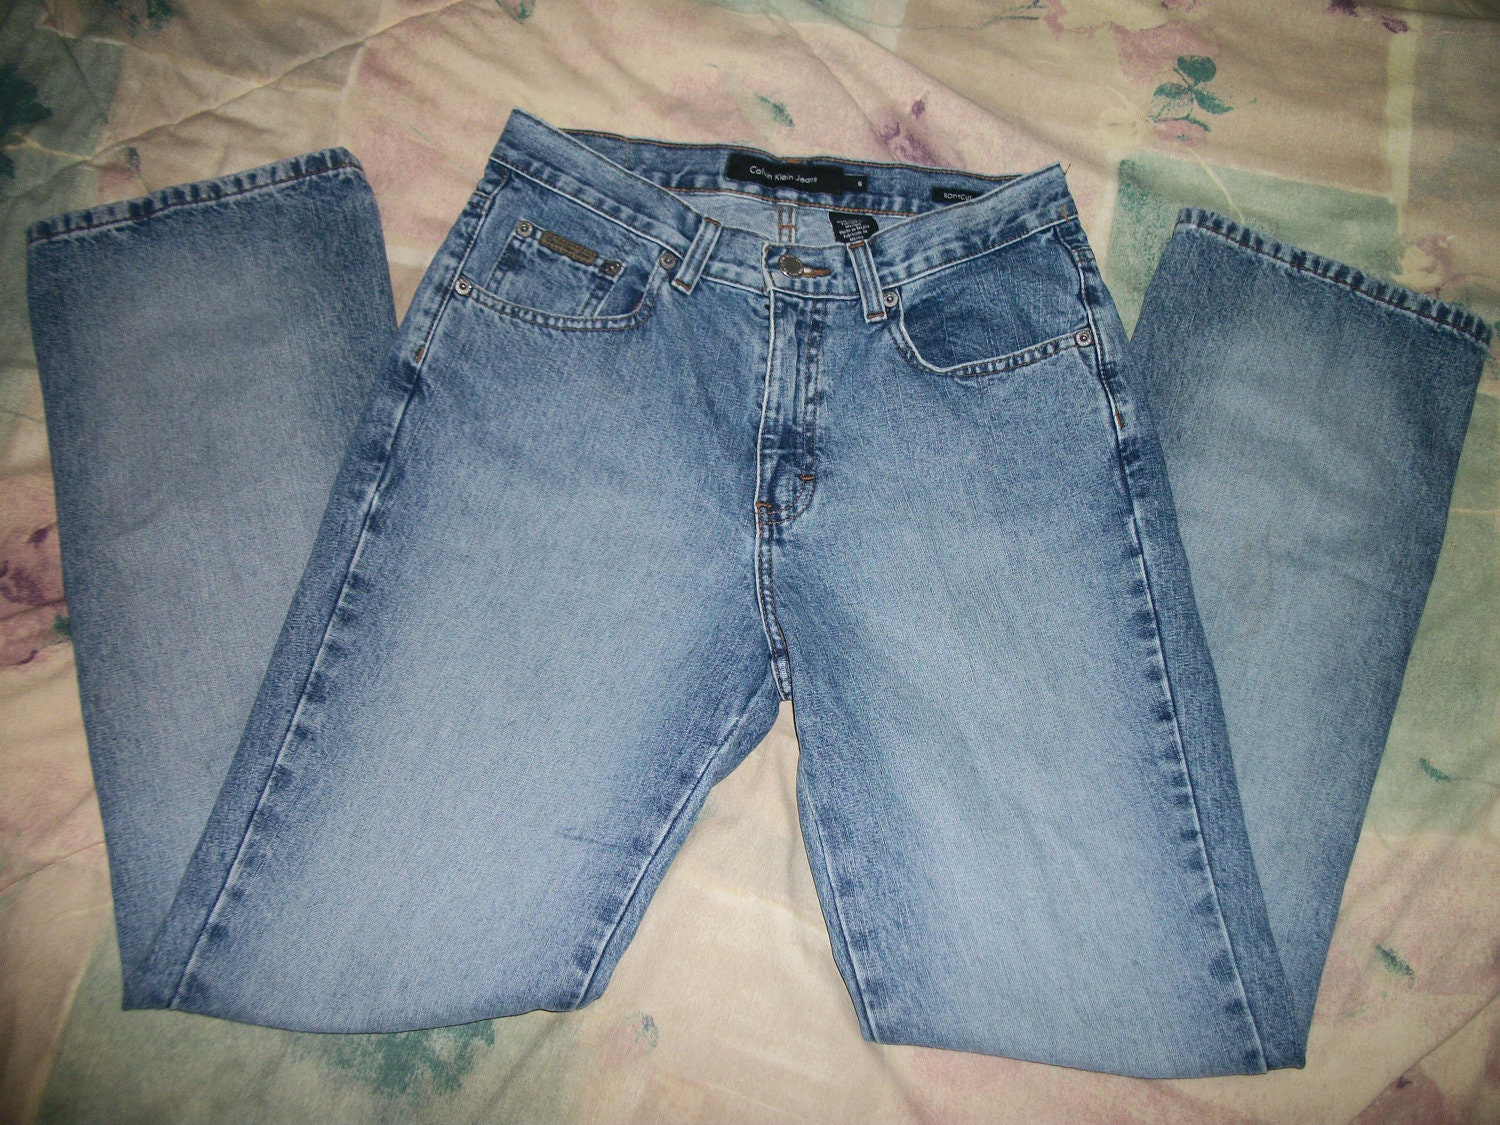 Size 0 Jeans Waist Measurement